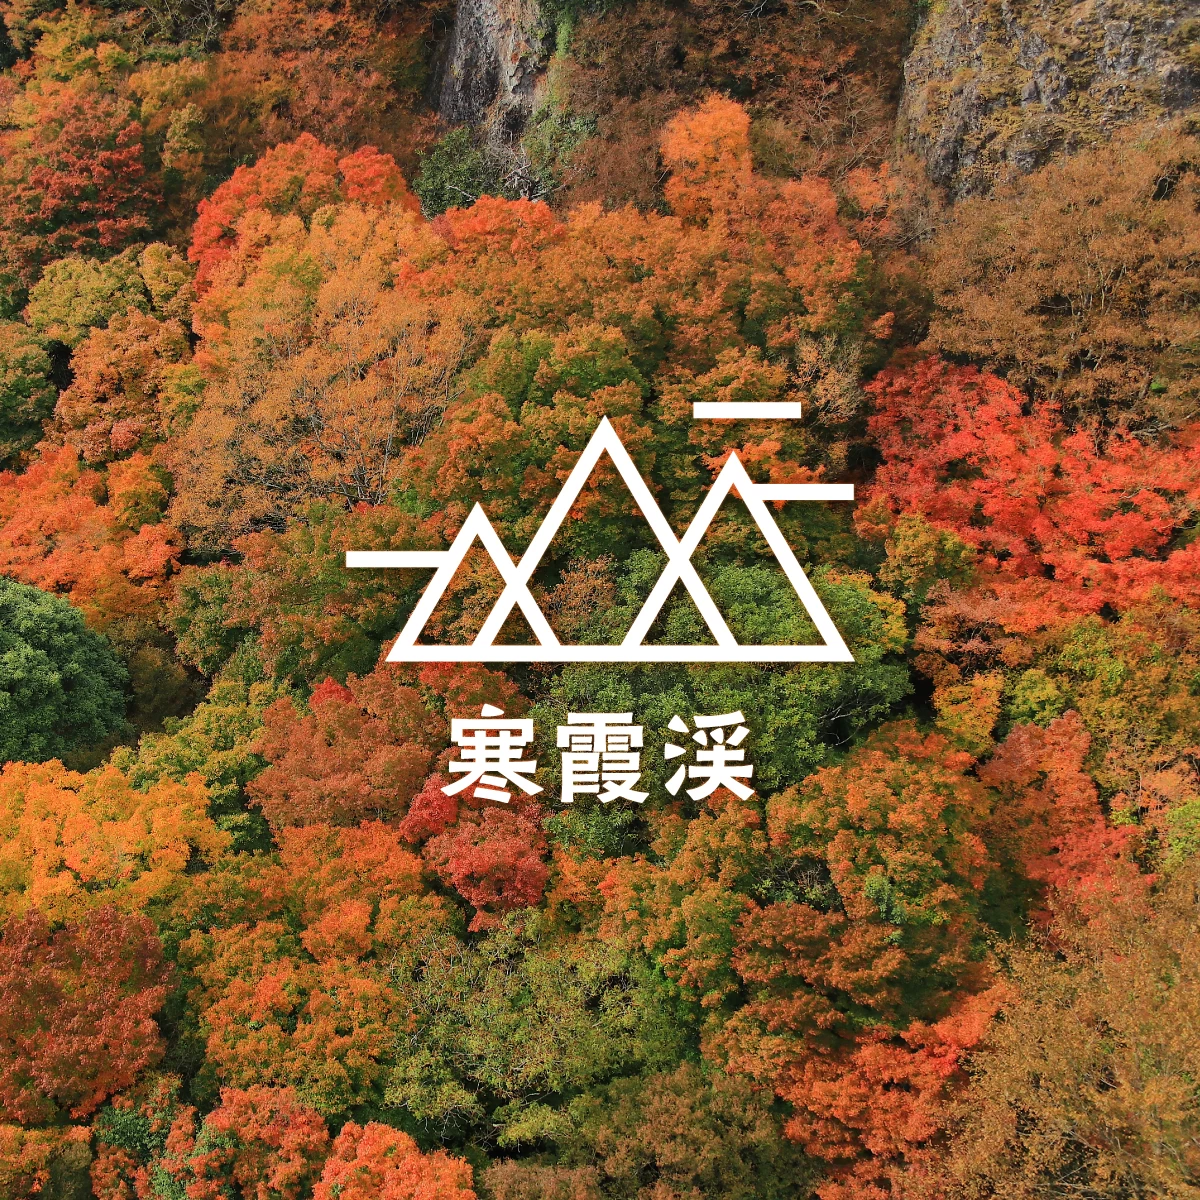 神戸から小豆島へフェリーで日帰り旅行。寒霞渓で紅葉ハイキング